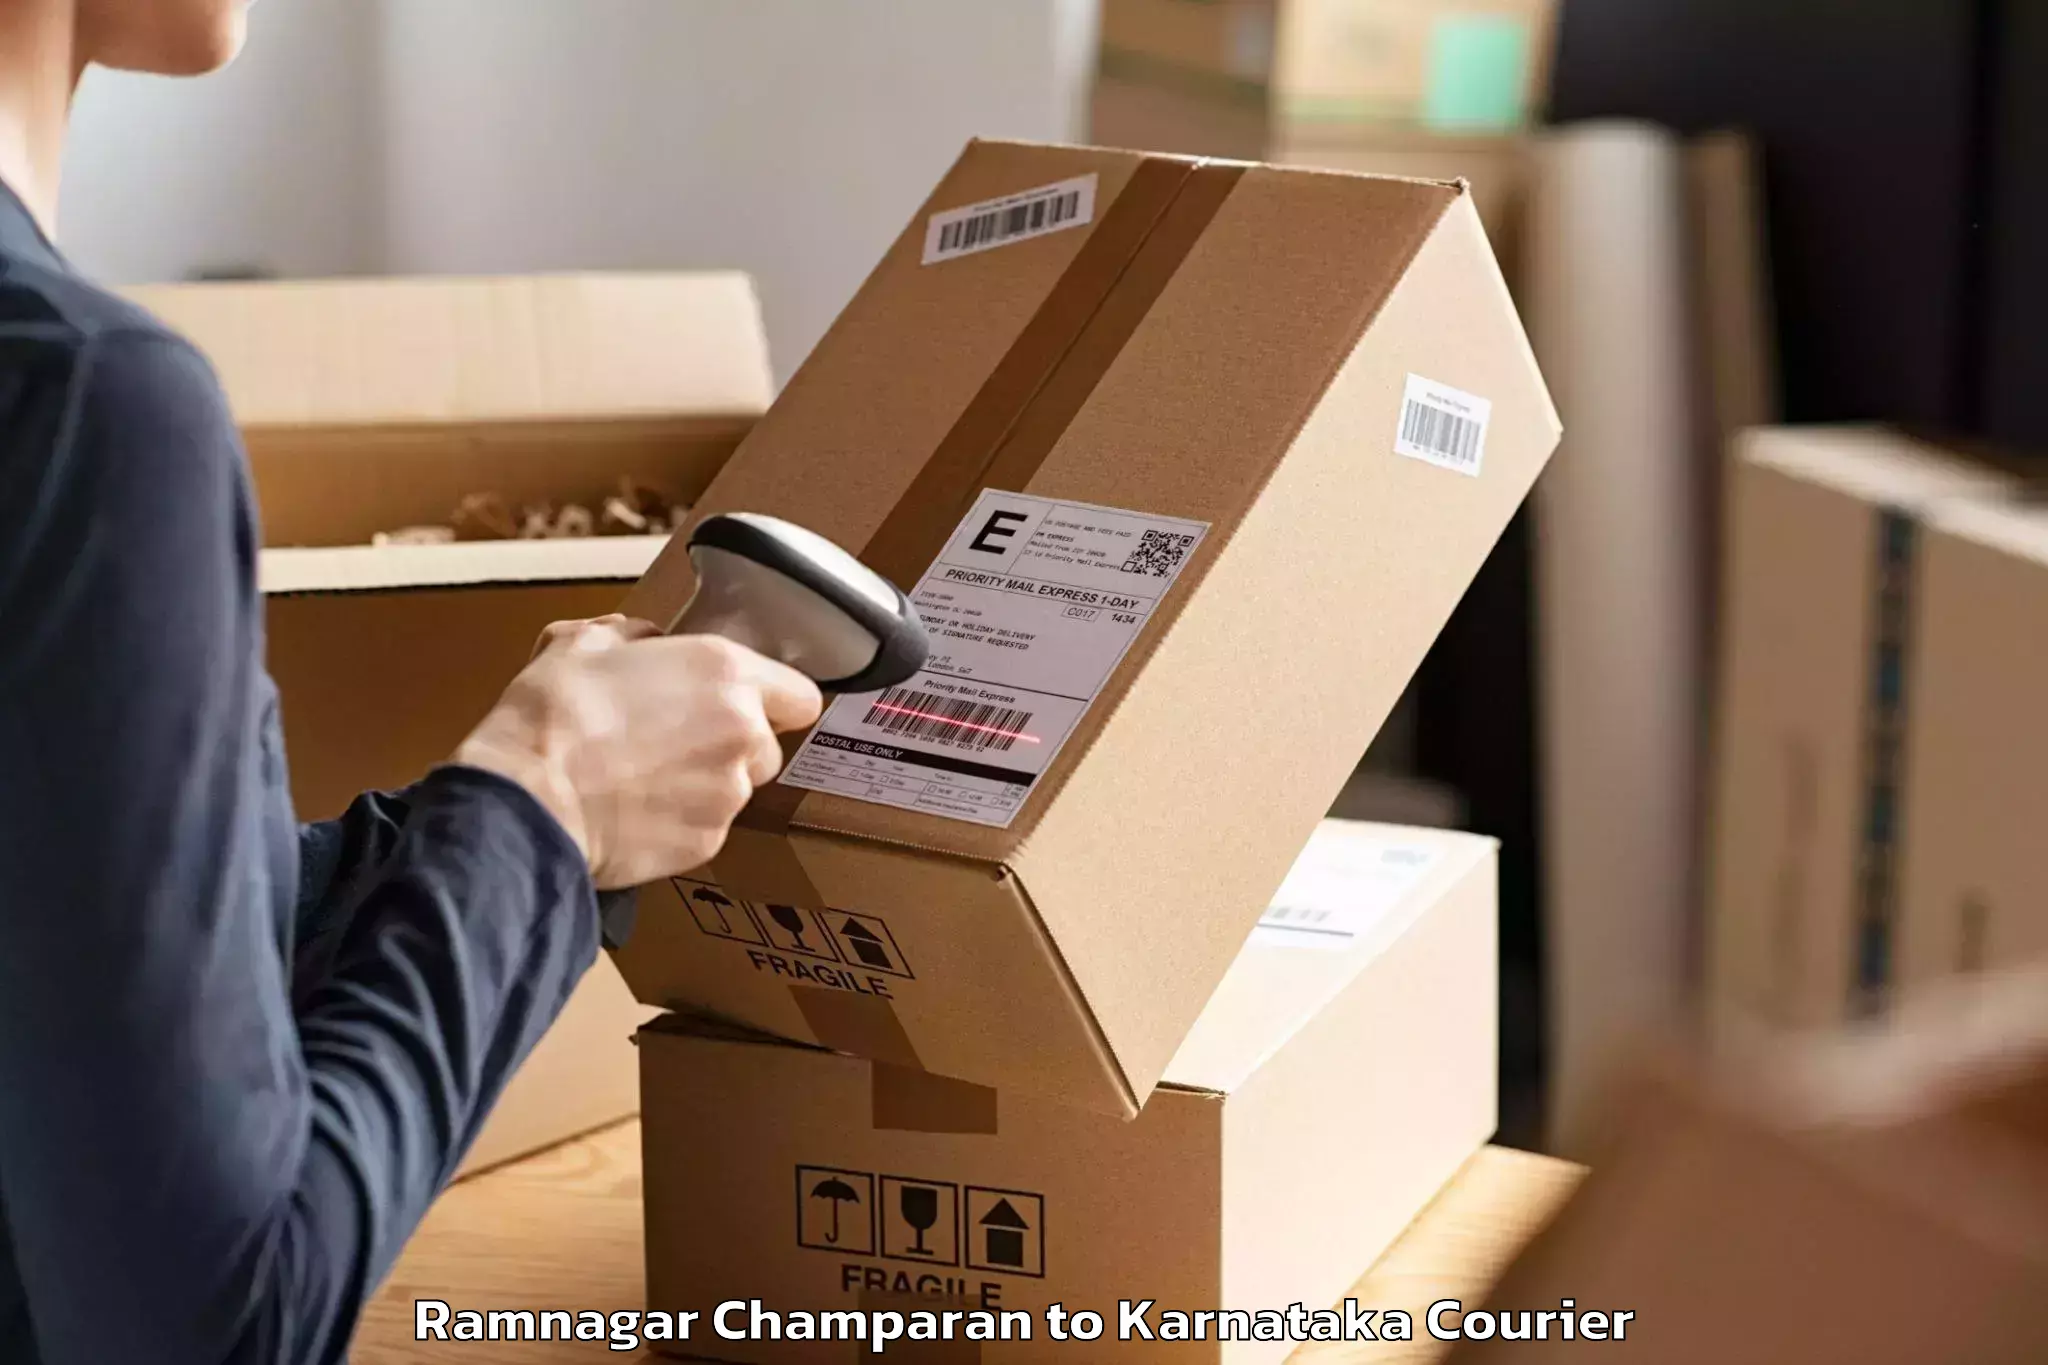 Budget-friendly movers Ramnagar Champaran to Karnataka